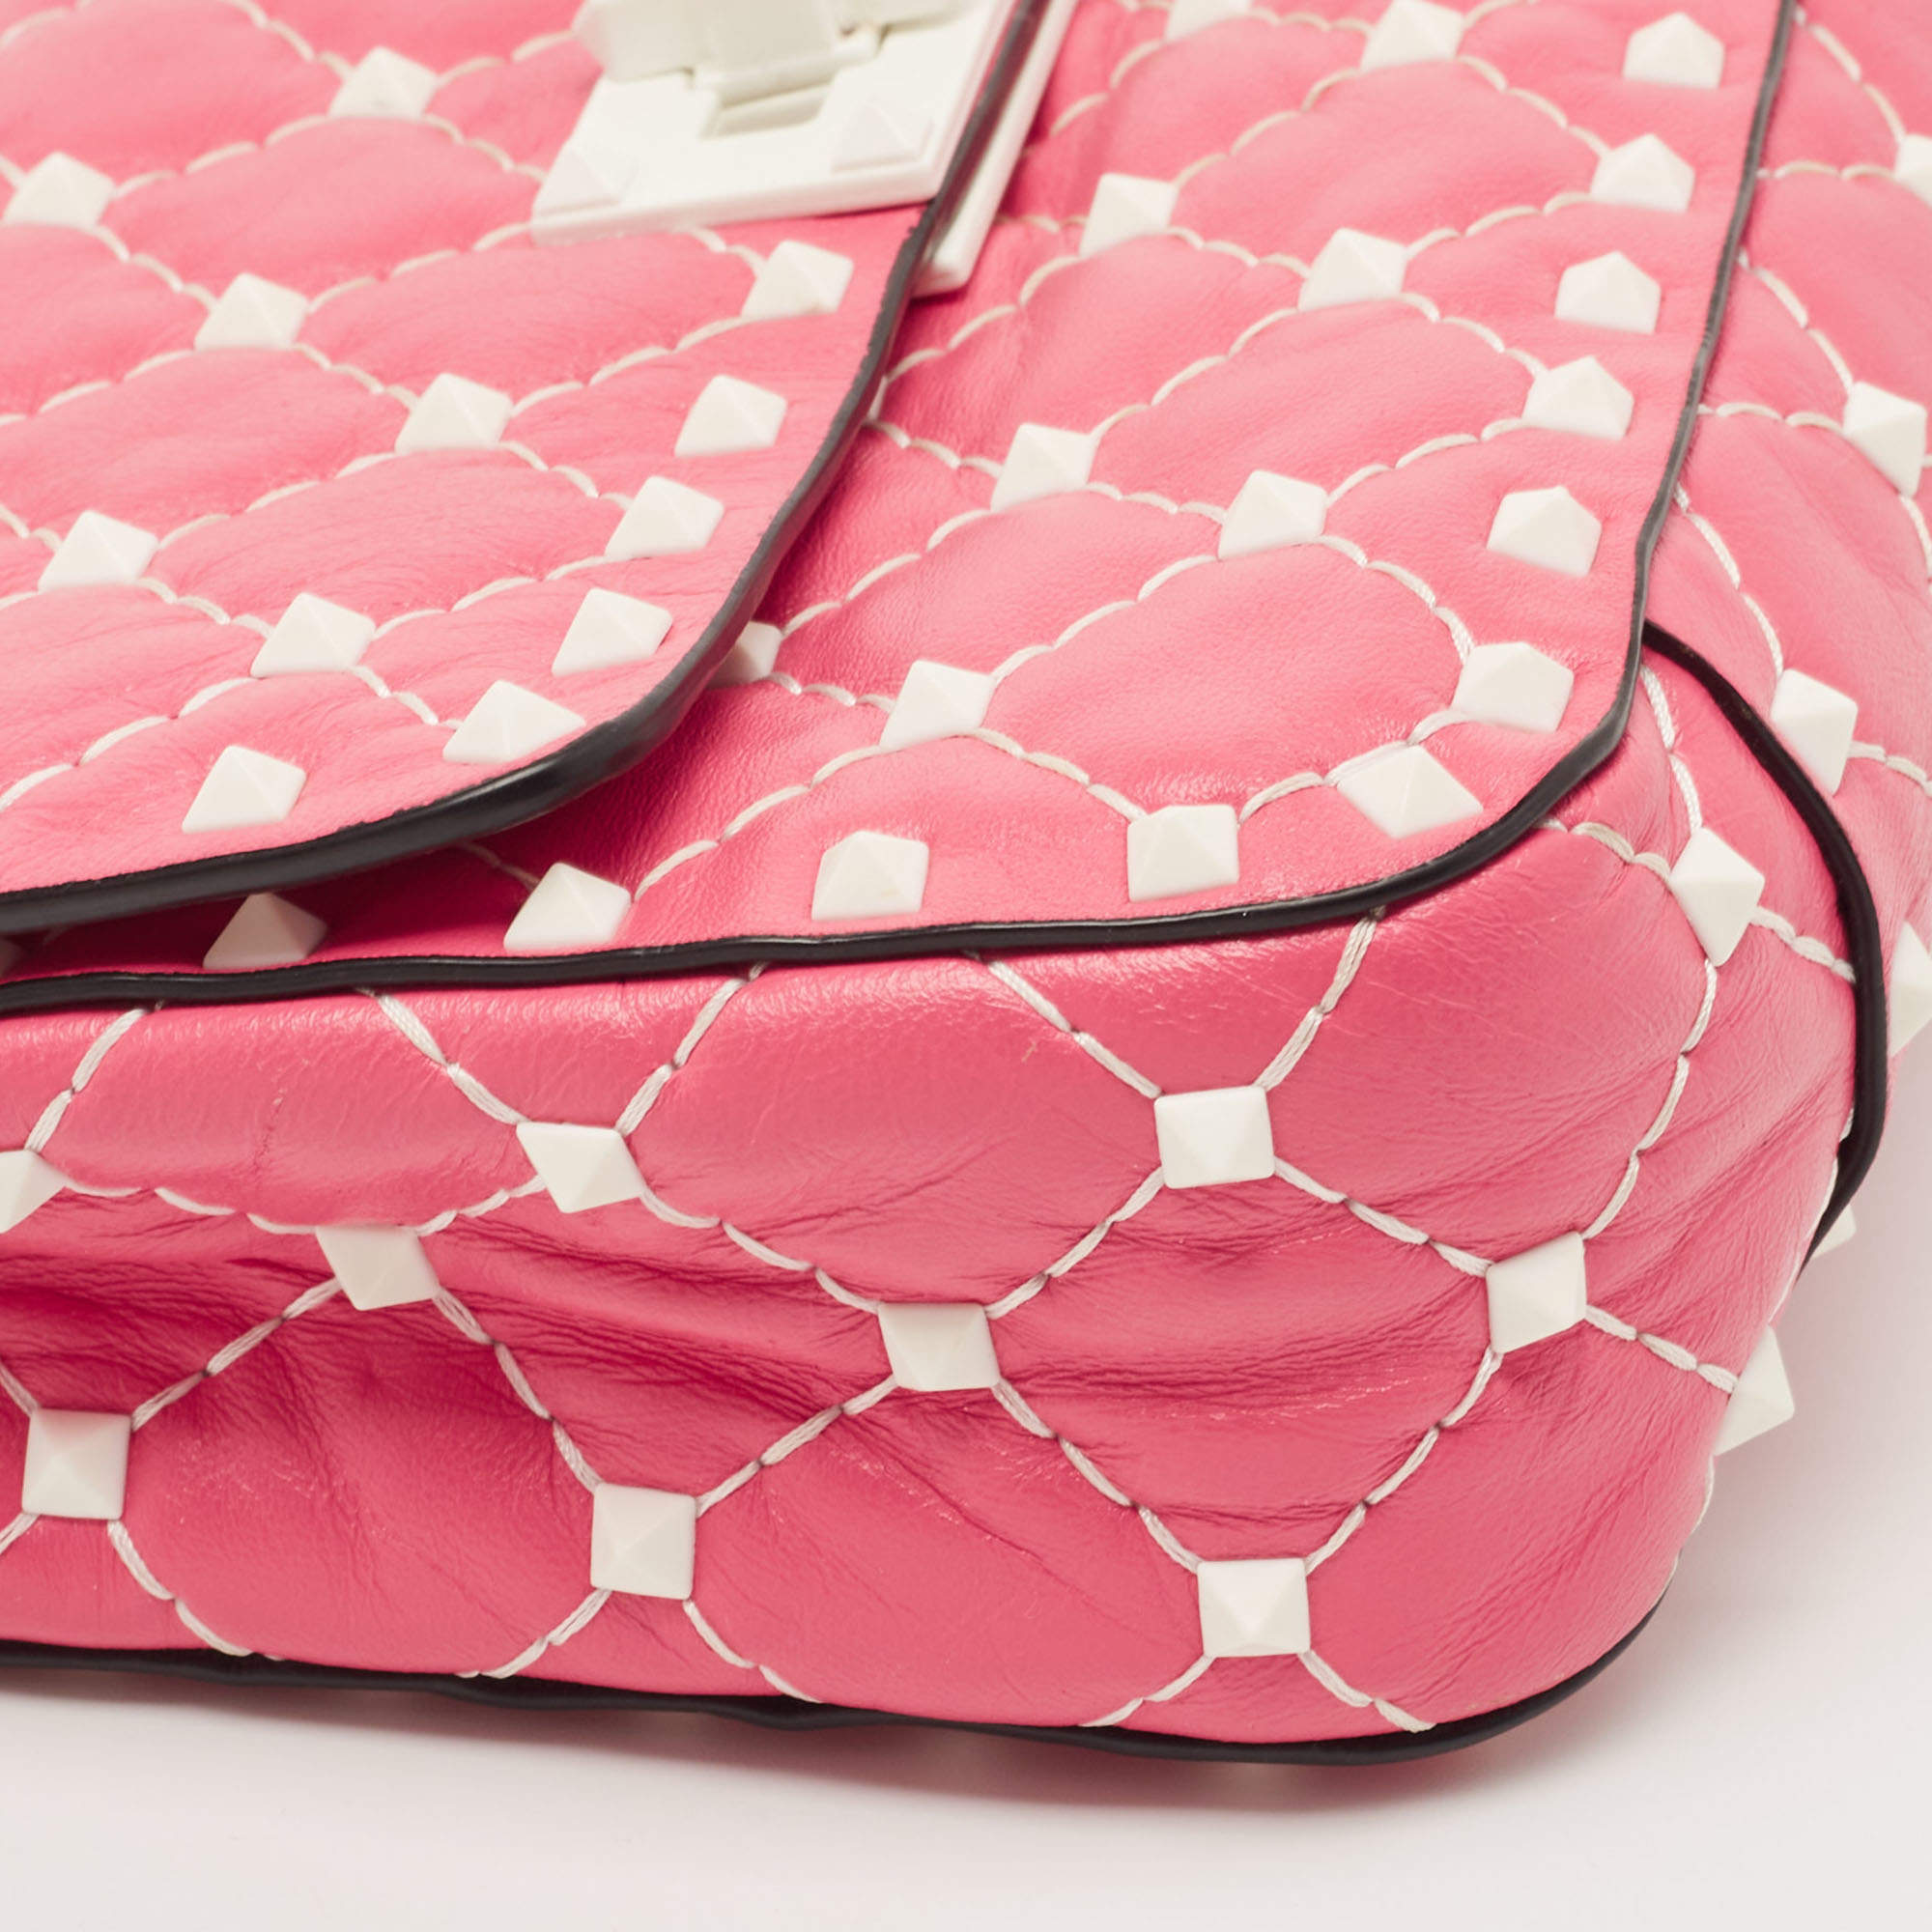 Valentino Garavani Rockstud Spike chain bag Pink – A Piece Lux